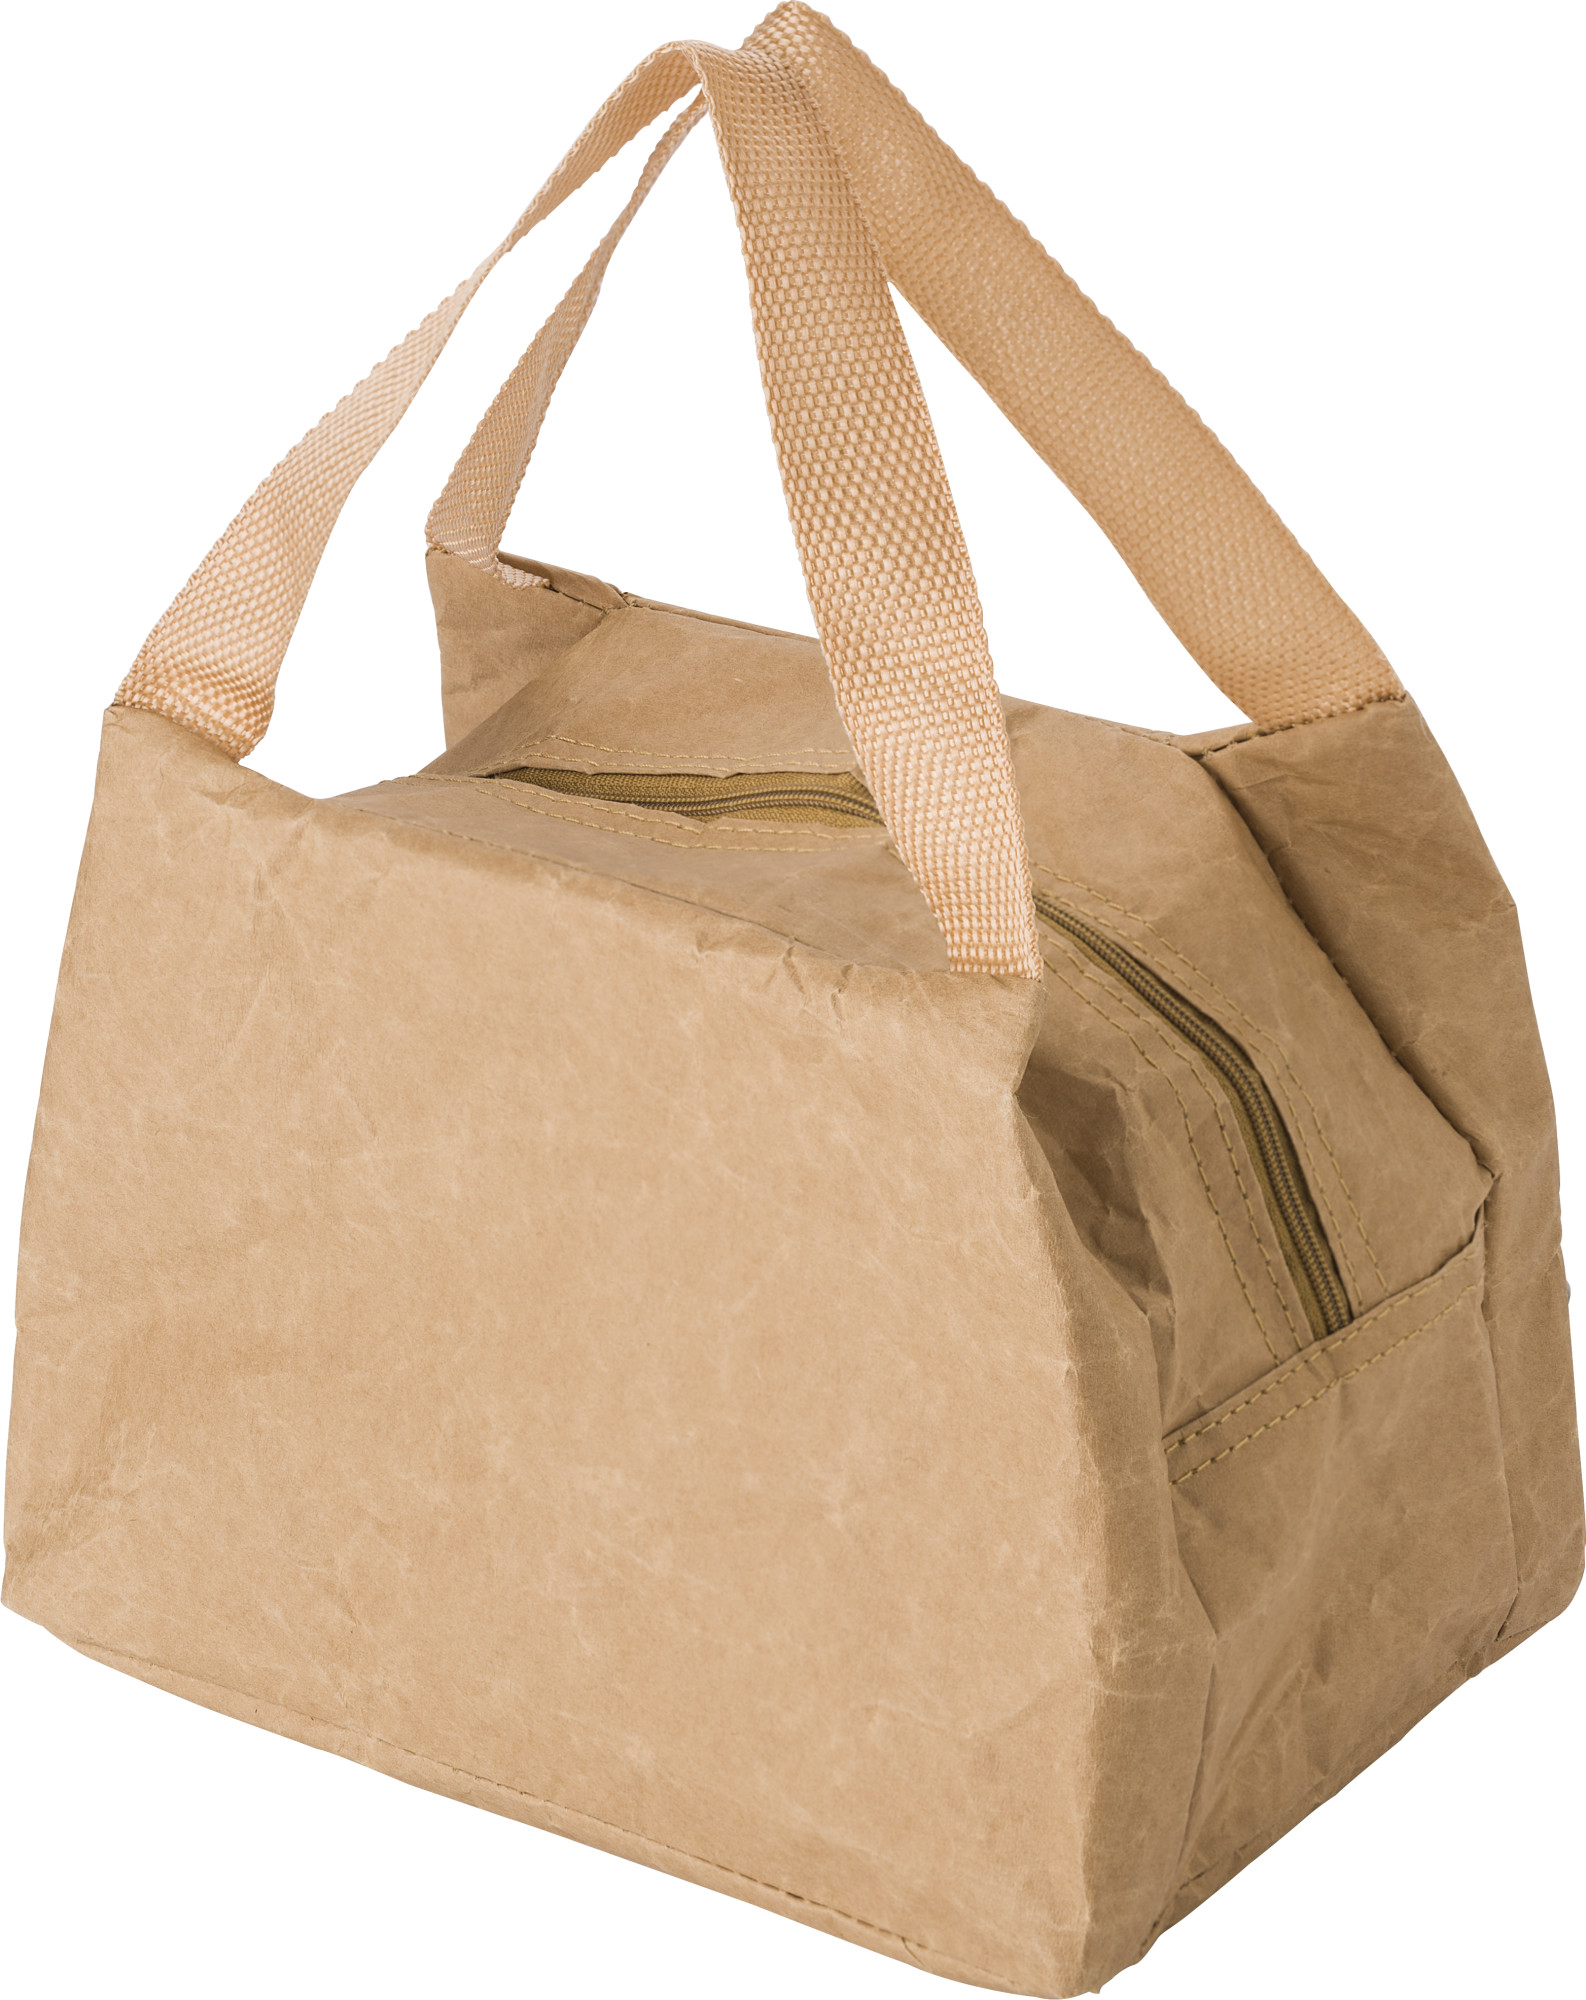 009341 011999999 3d045 rgt pro01 fal - Kraft paper cooler bag